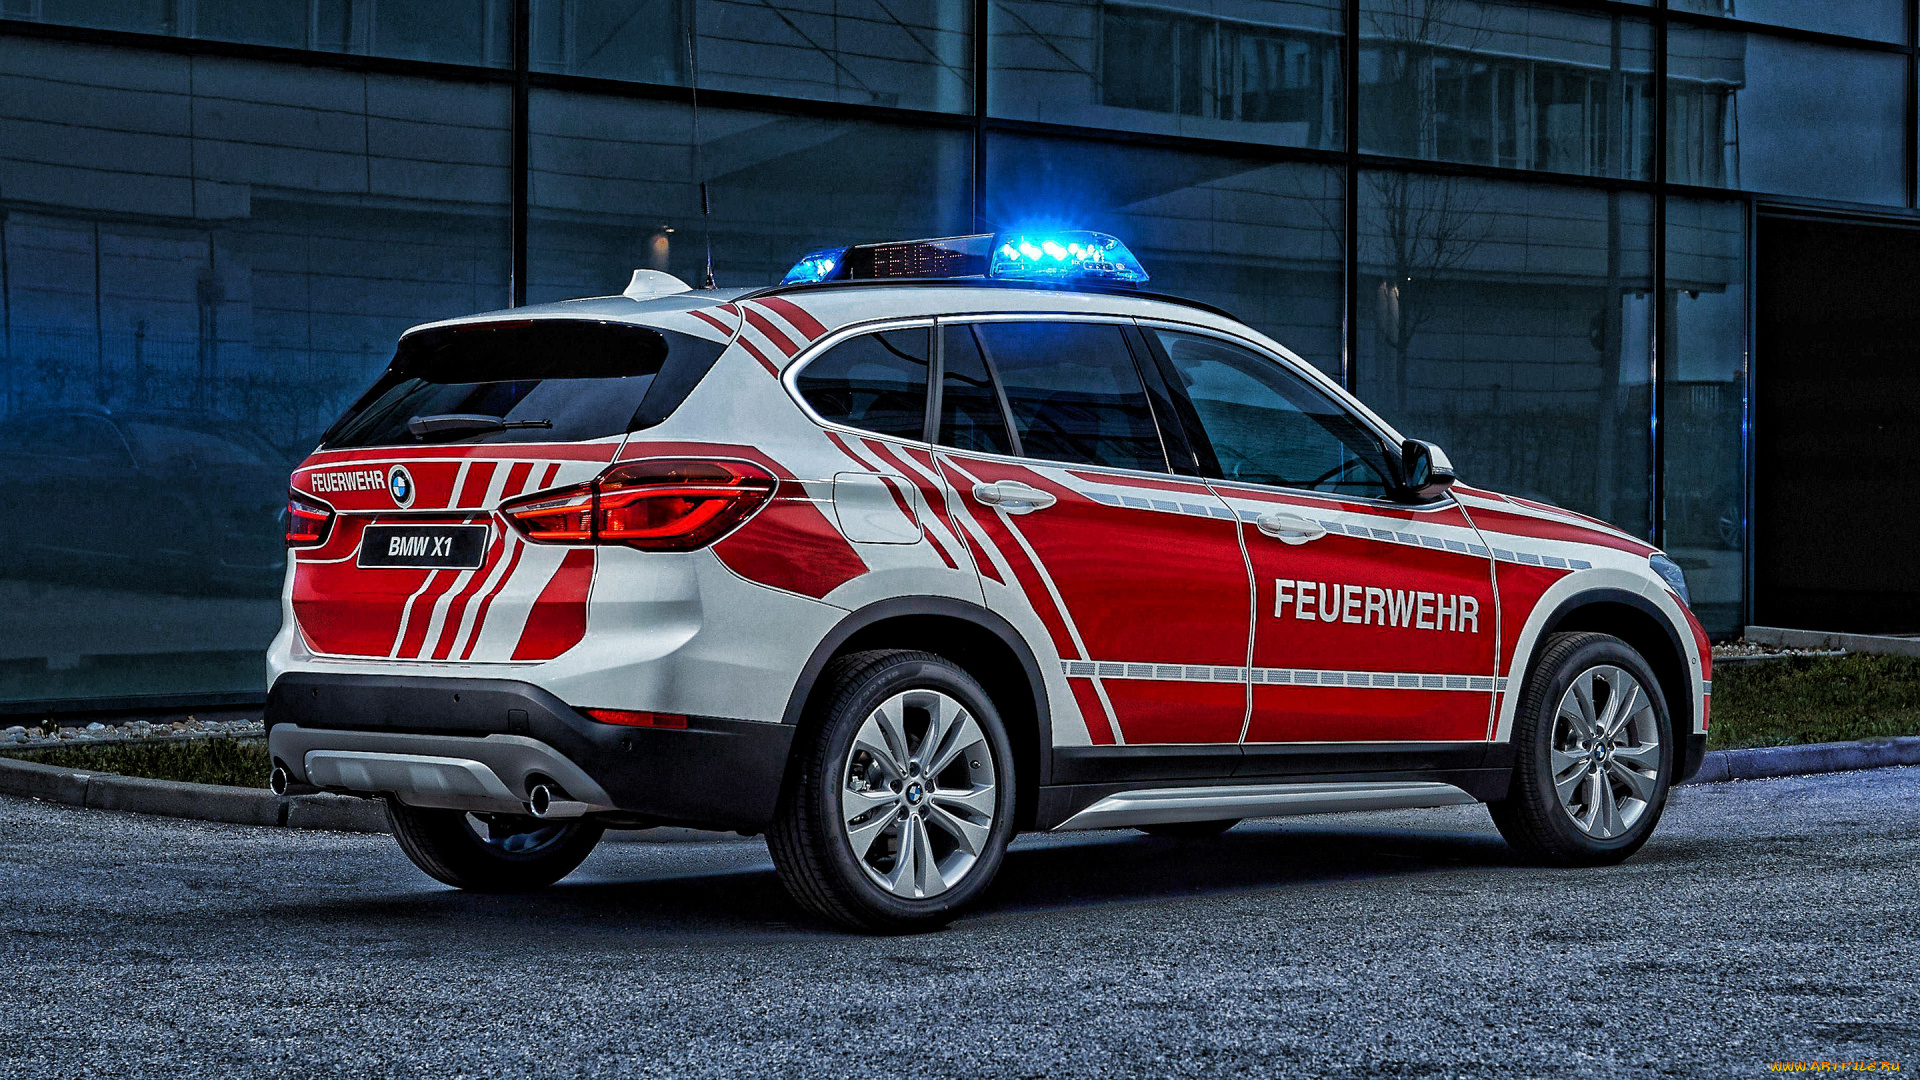 2019, bmw, x1, автомобили, bmw, специальные, немецкая, спасательная, служба, пожарный, автомобиль, 2019, x1, feuerwehr, f48